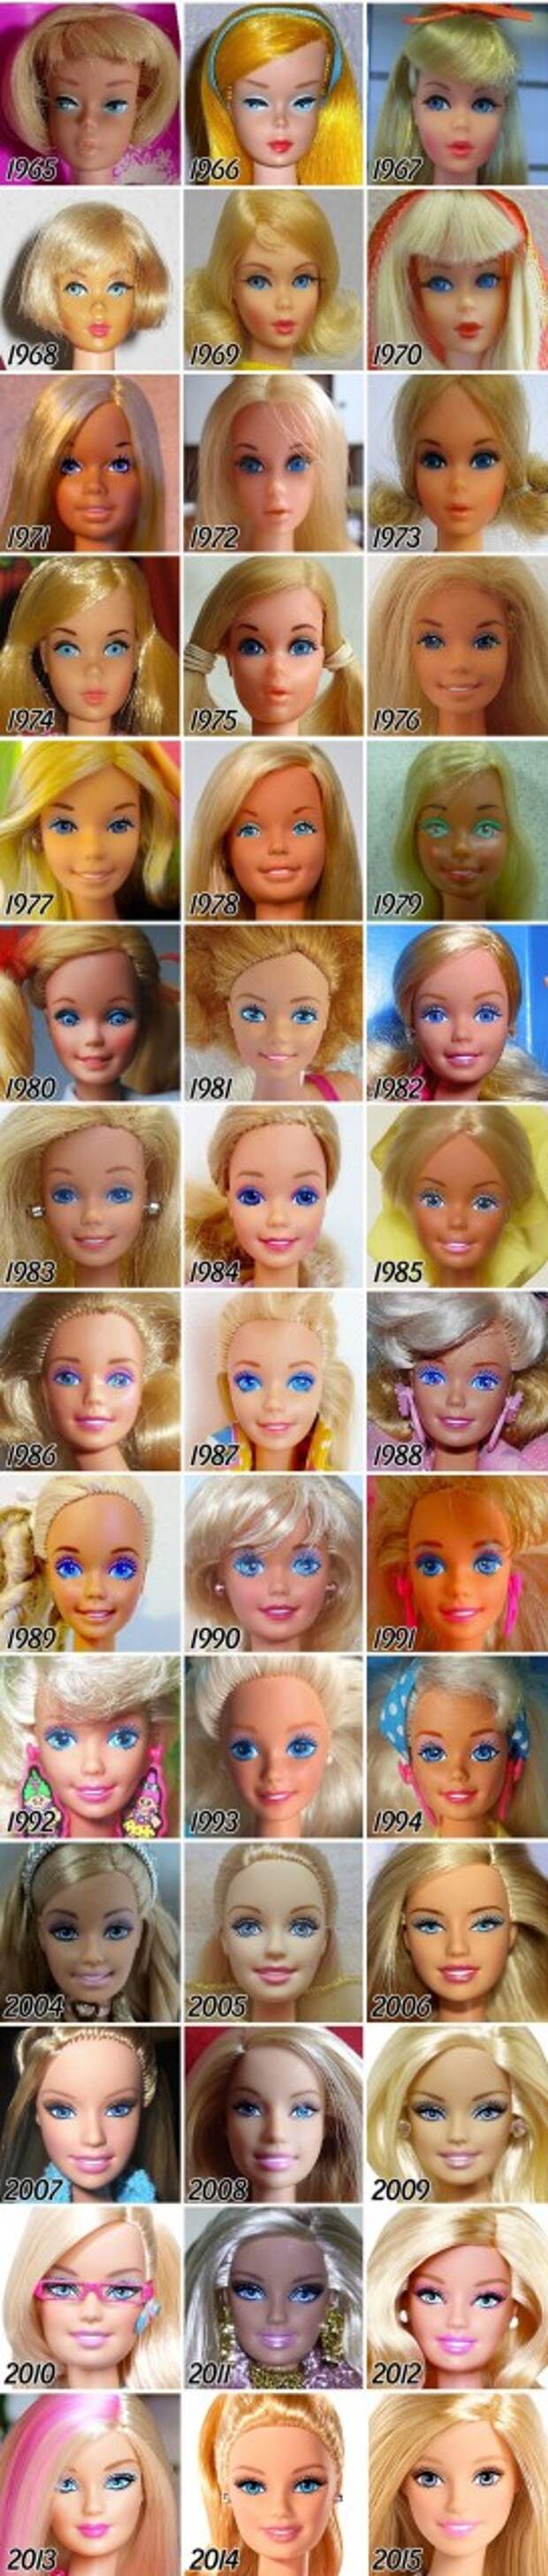 Эволюция куклы Барби с момента создания и до наших дней